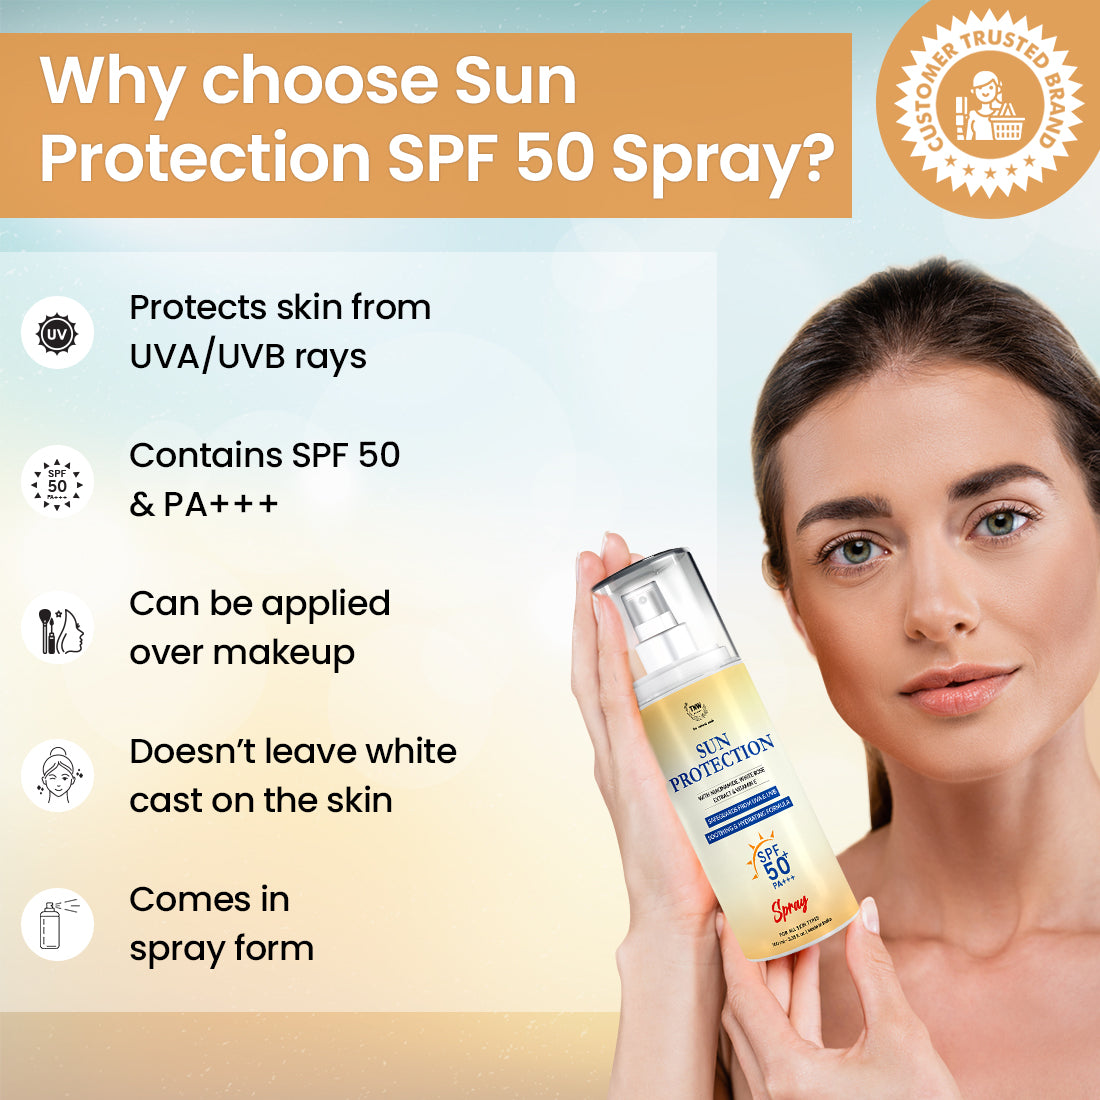 Sun Protection Spf 50 Spray